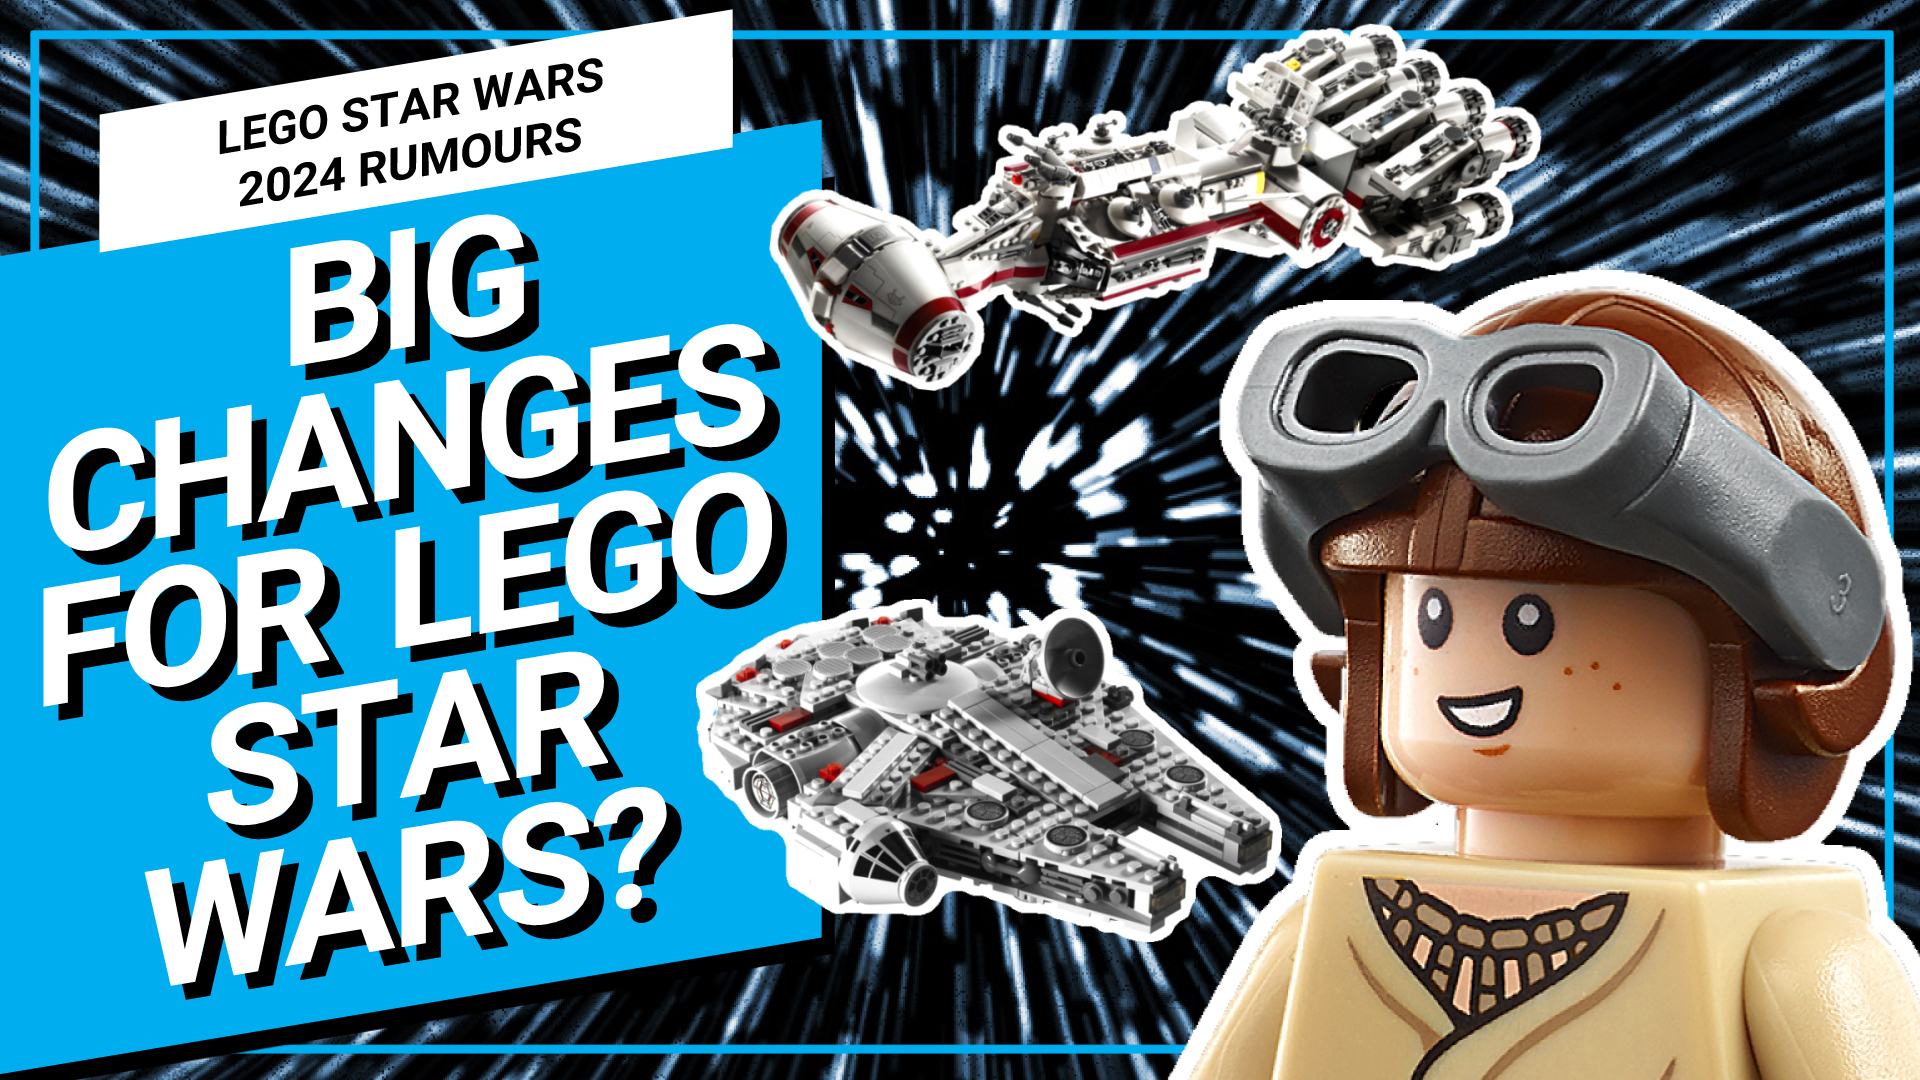 GUARDA: Si vocifera di grandi cambiamenti per LEGO Star Wars in 2024